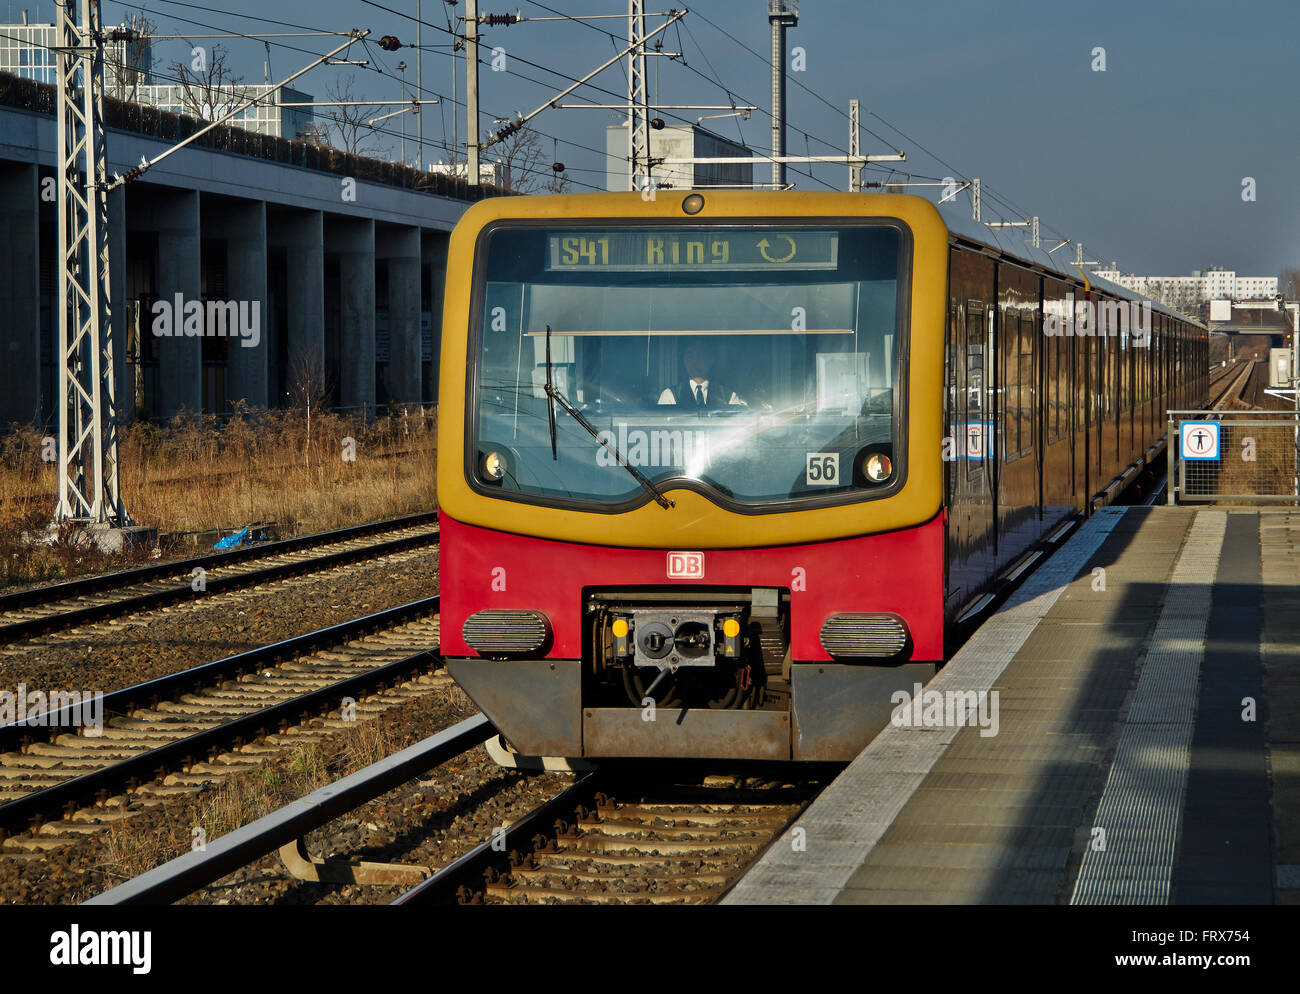 Él carretera de circunvalación o ferrocarril Circular es de 37,5 km (23,3 millas) de longitud de la línea de ferrocarril S-Bahn de Berlín en Alemania, la red alrededor de la ci Foto de stock